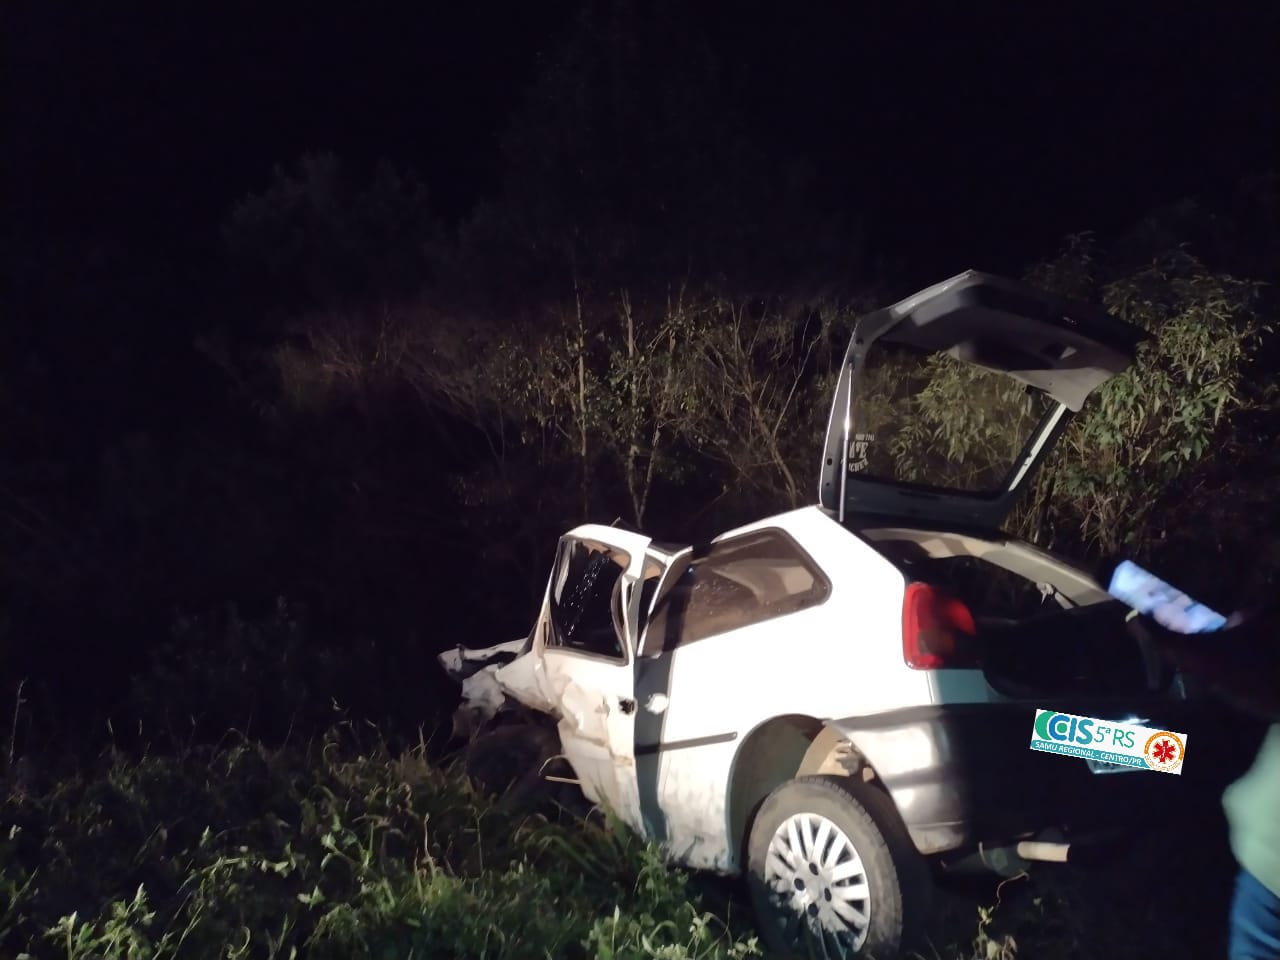 BR 277: acidente com cinco veículos deixa um morto na noite desta  segunda-feira (23) – Correio do Cidadão – Notícias de Guarapuava e região